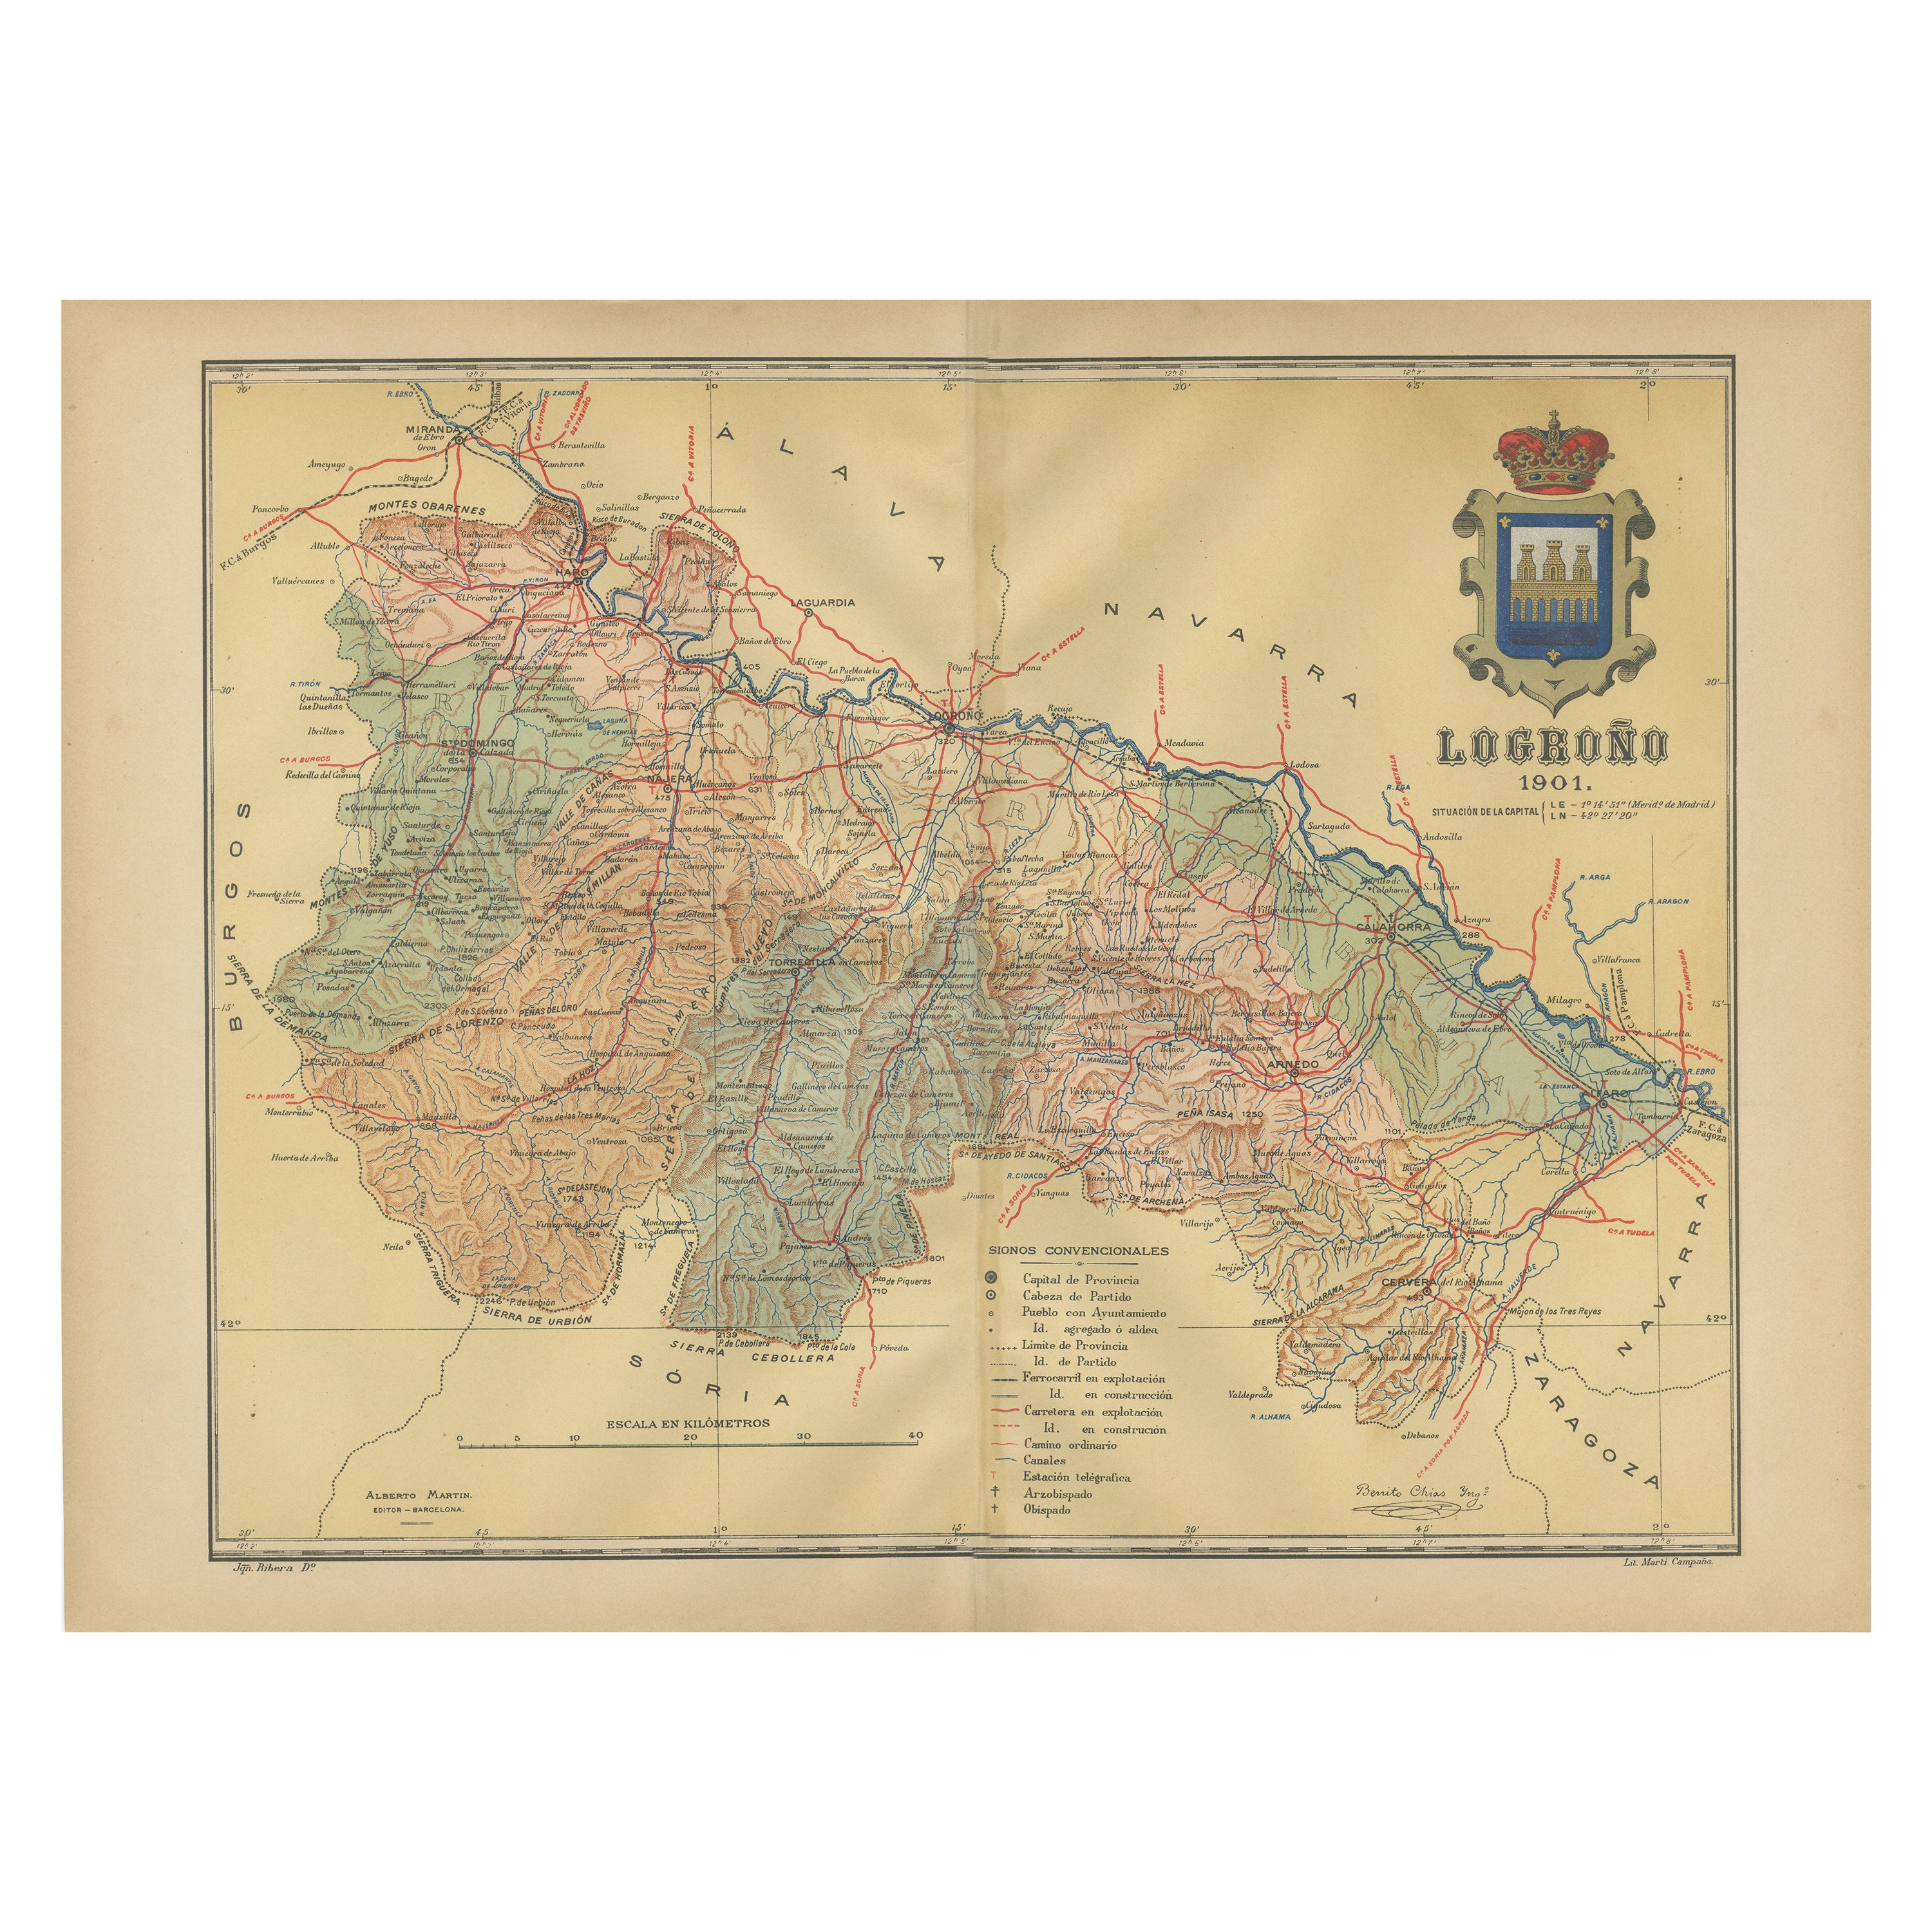 La Rioja 1901 : une voyage cartographique à travers le pays viticole de renommée espagnole